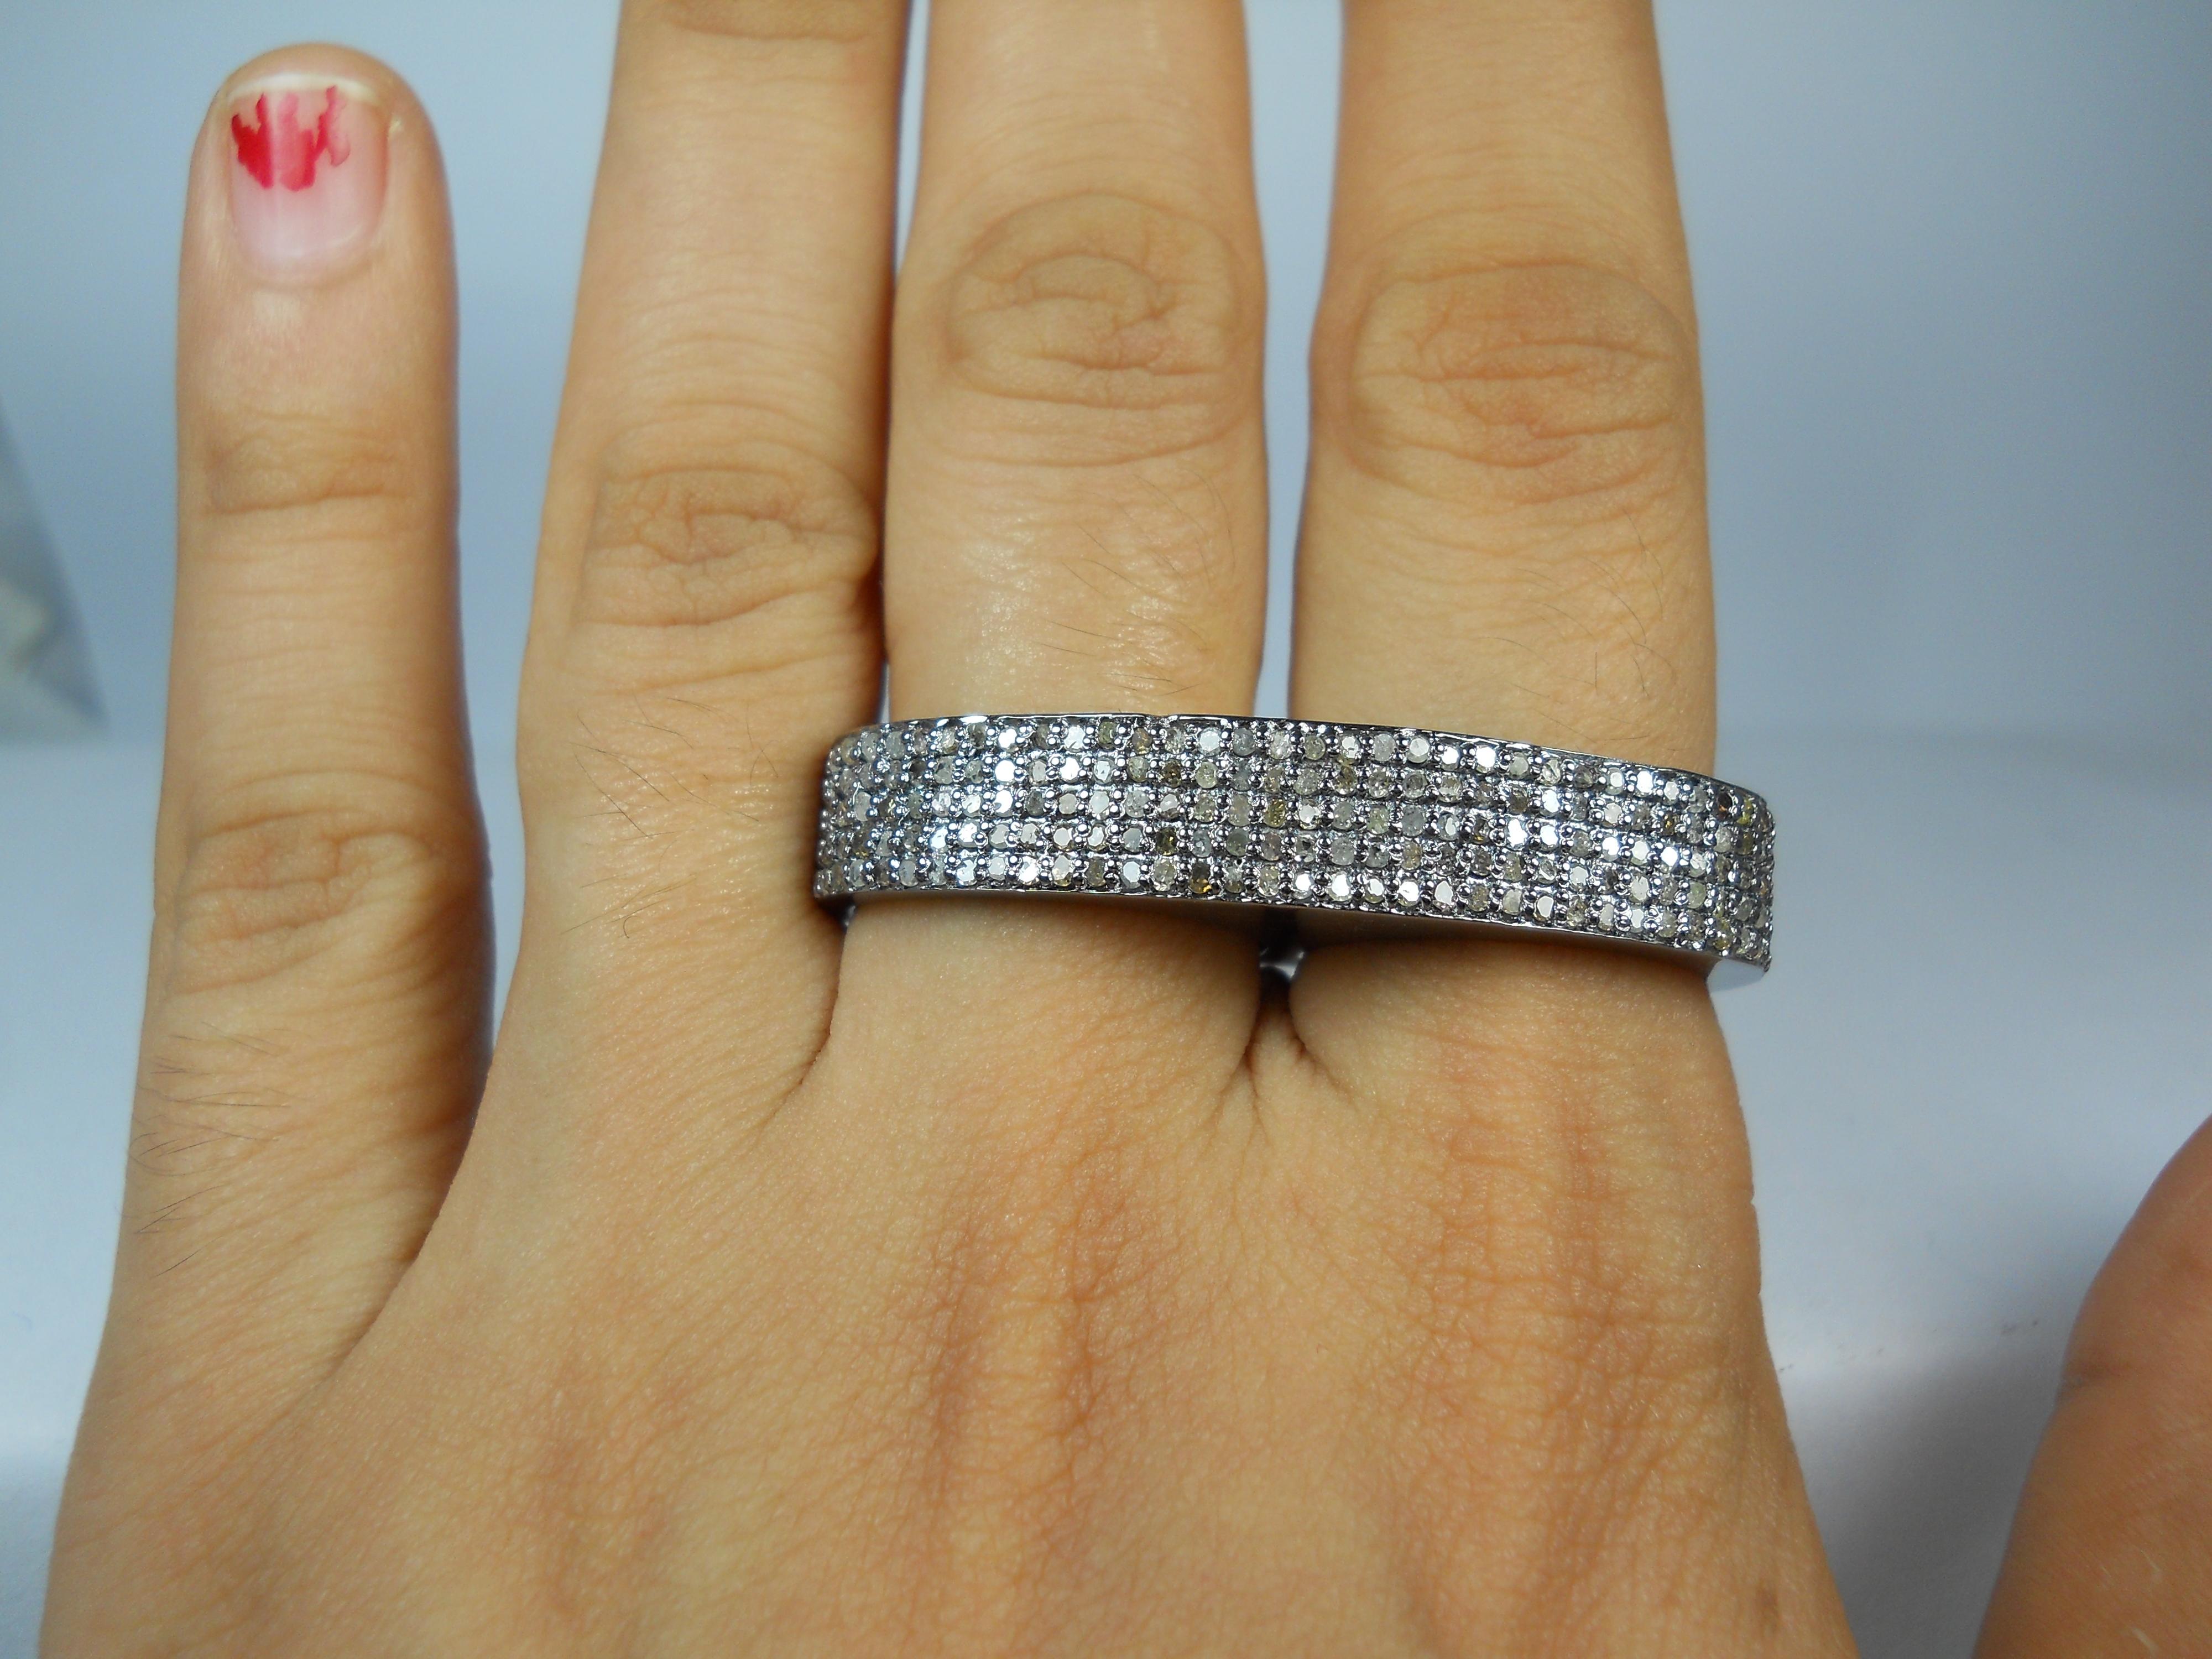 Dieser wunderschöne Zweifingerring mit natürlichen Diamanten besteht aus:
Diamant= natürliche, gepflasterte Diamanten
Gewicht des Diamanten - 1,90cts
Farbe des Diamanten - weiß mit einem Hauch von Grau
Metall- Silber
Reinheit - 925